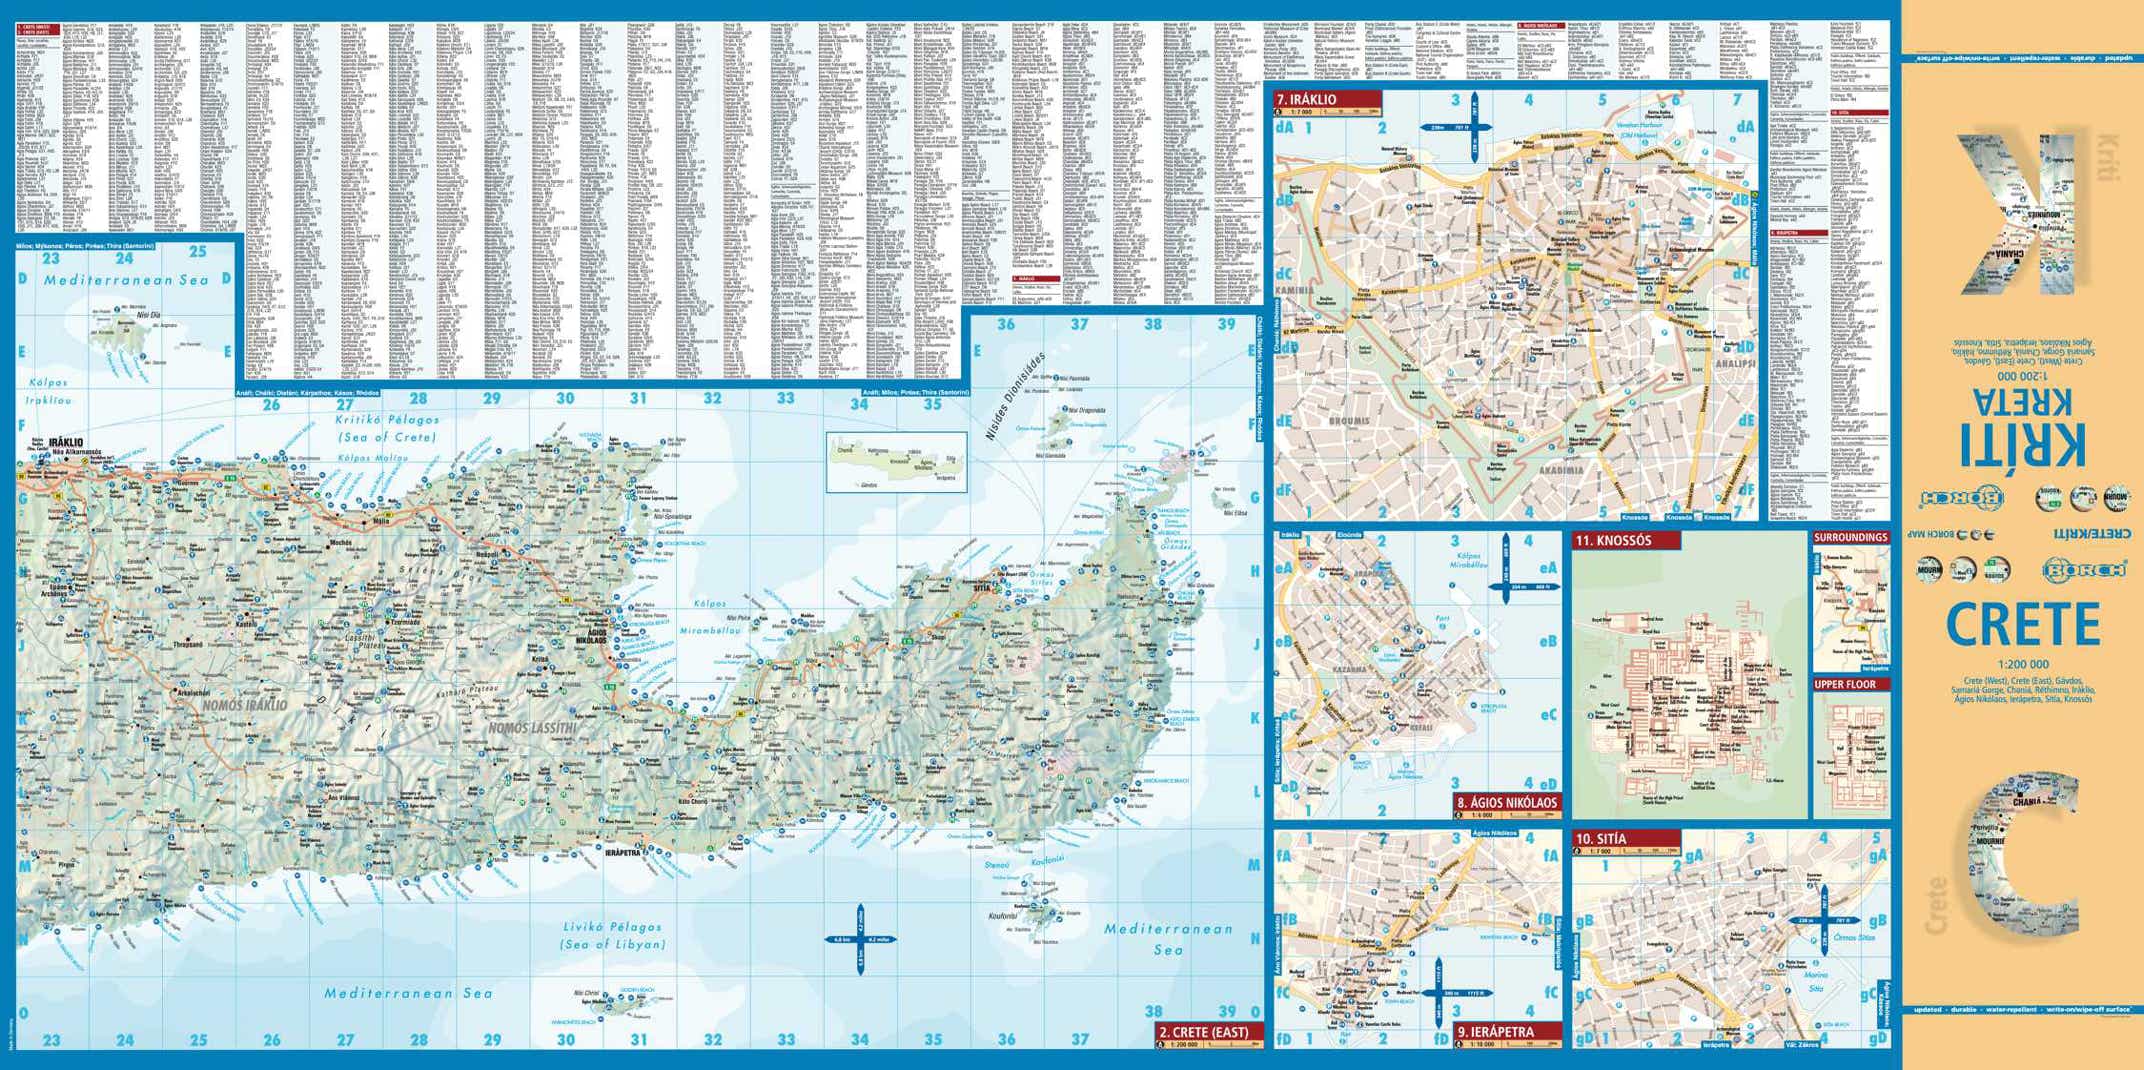 Kreta Griechenland Borch Map - Seite 1